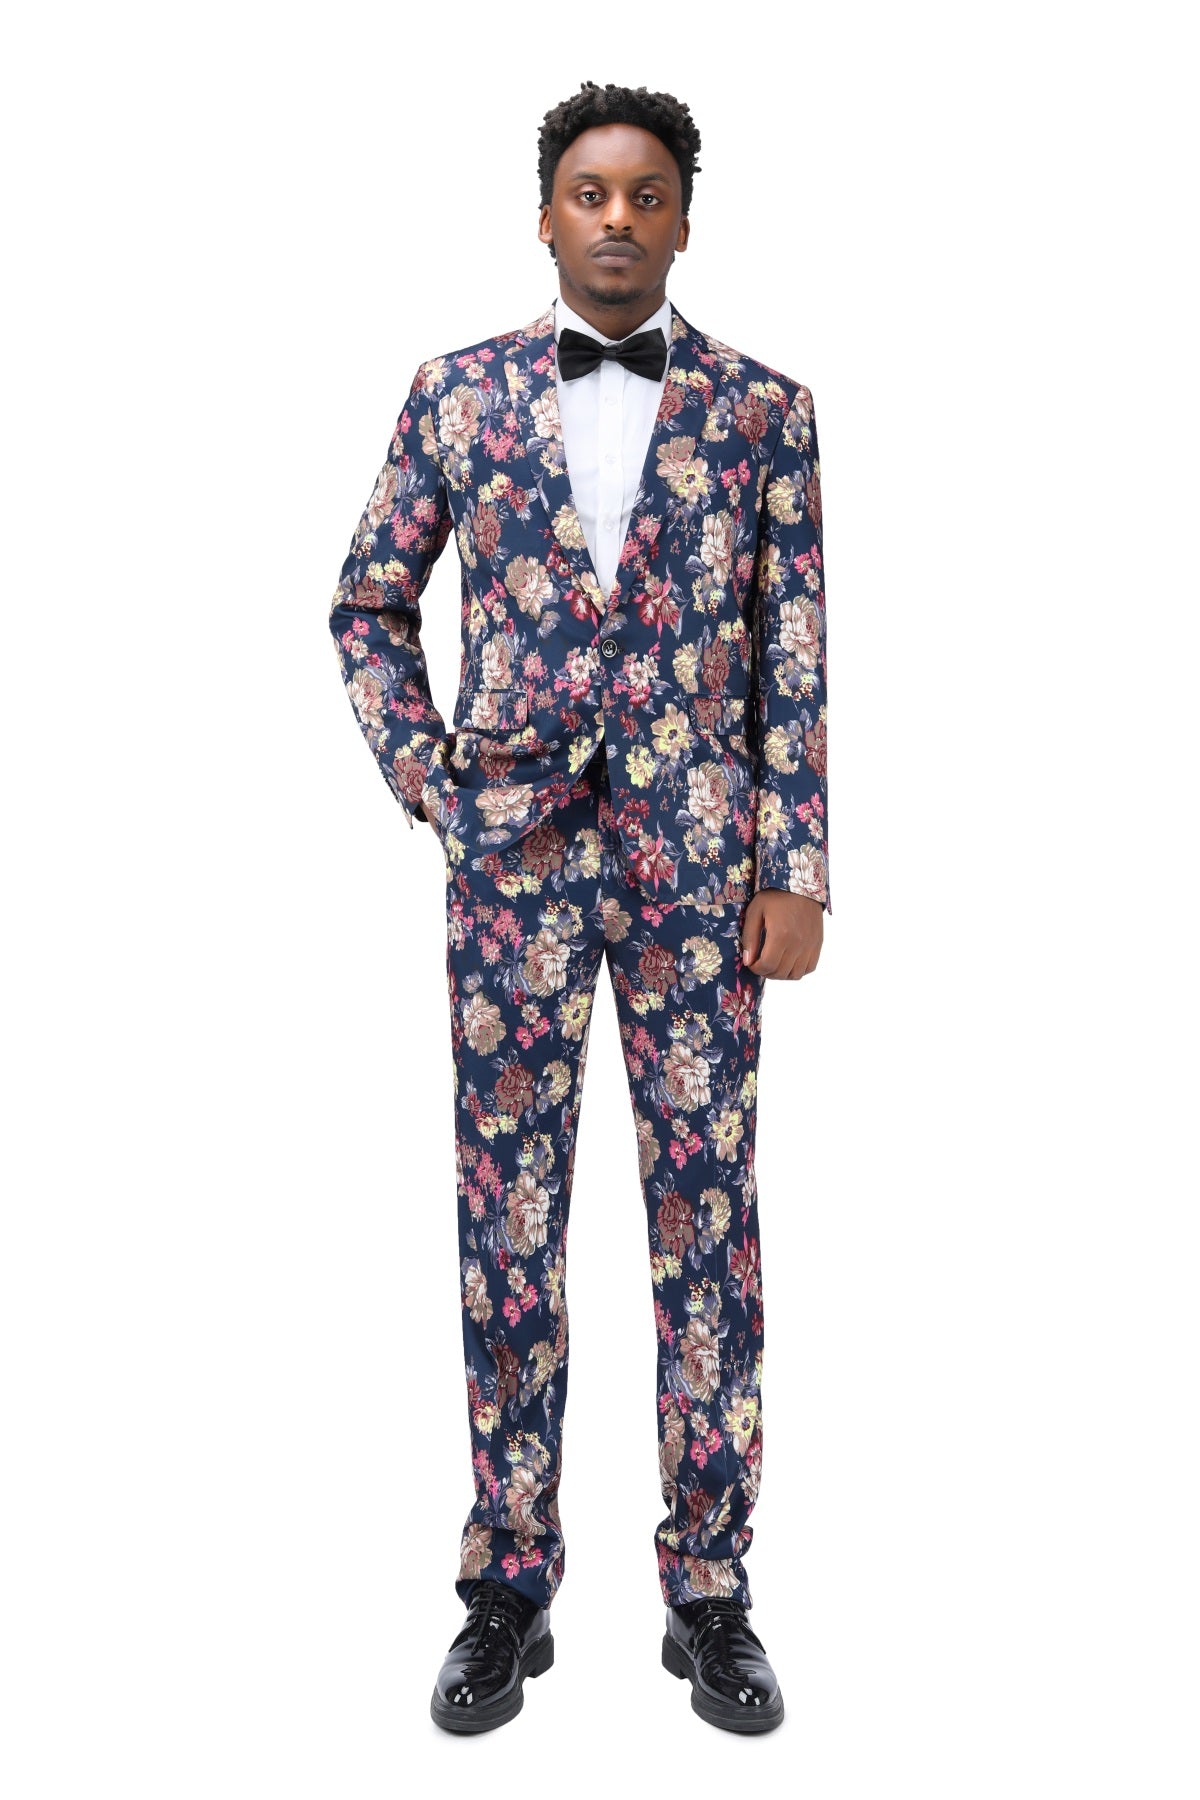 Wine Color Men 2 Piece Suits Wedding Wear Slim Fit 2 Piece Suits